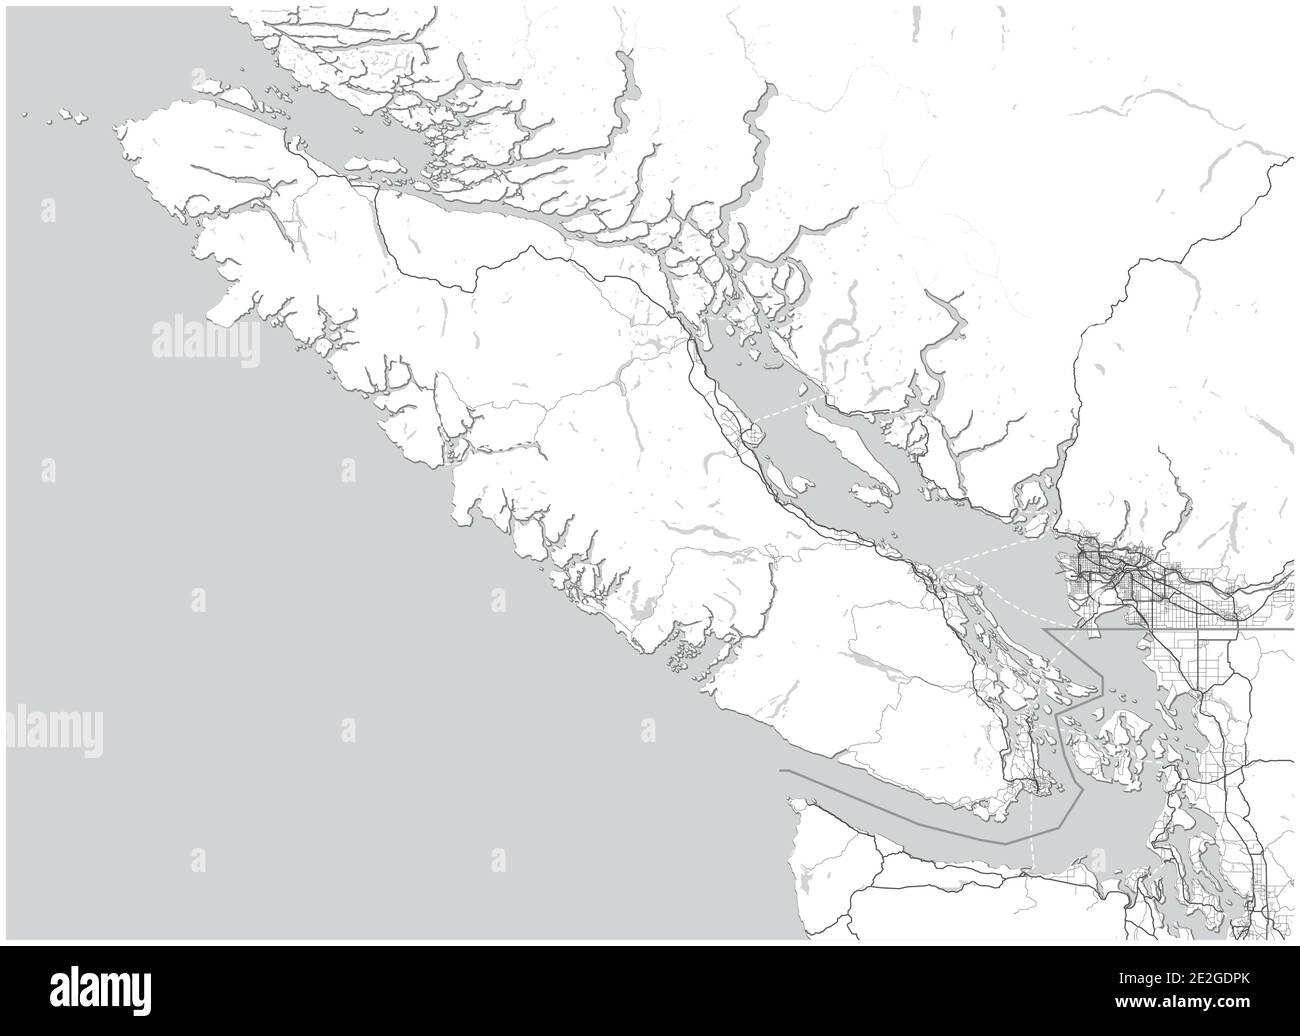 Vancouver Island Map con Greater Vancouver, British Columbia, Canadá y partes del estado de Washington, Estados Unidos. Mapa de escala de grises simple sin texto Ilustración del Vector